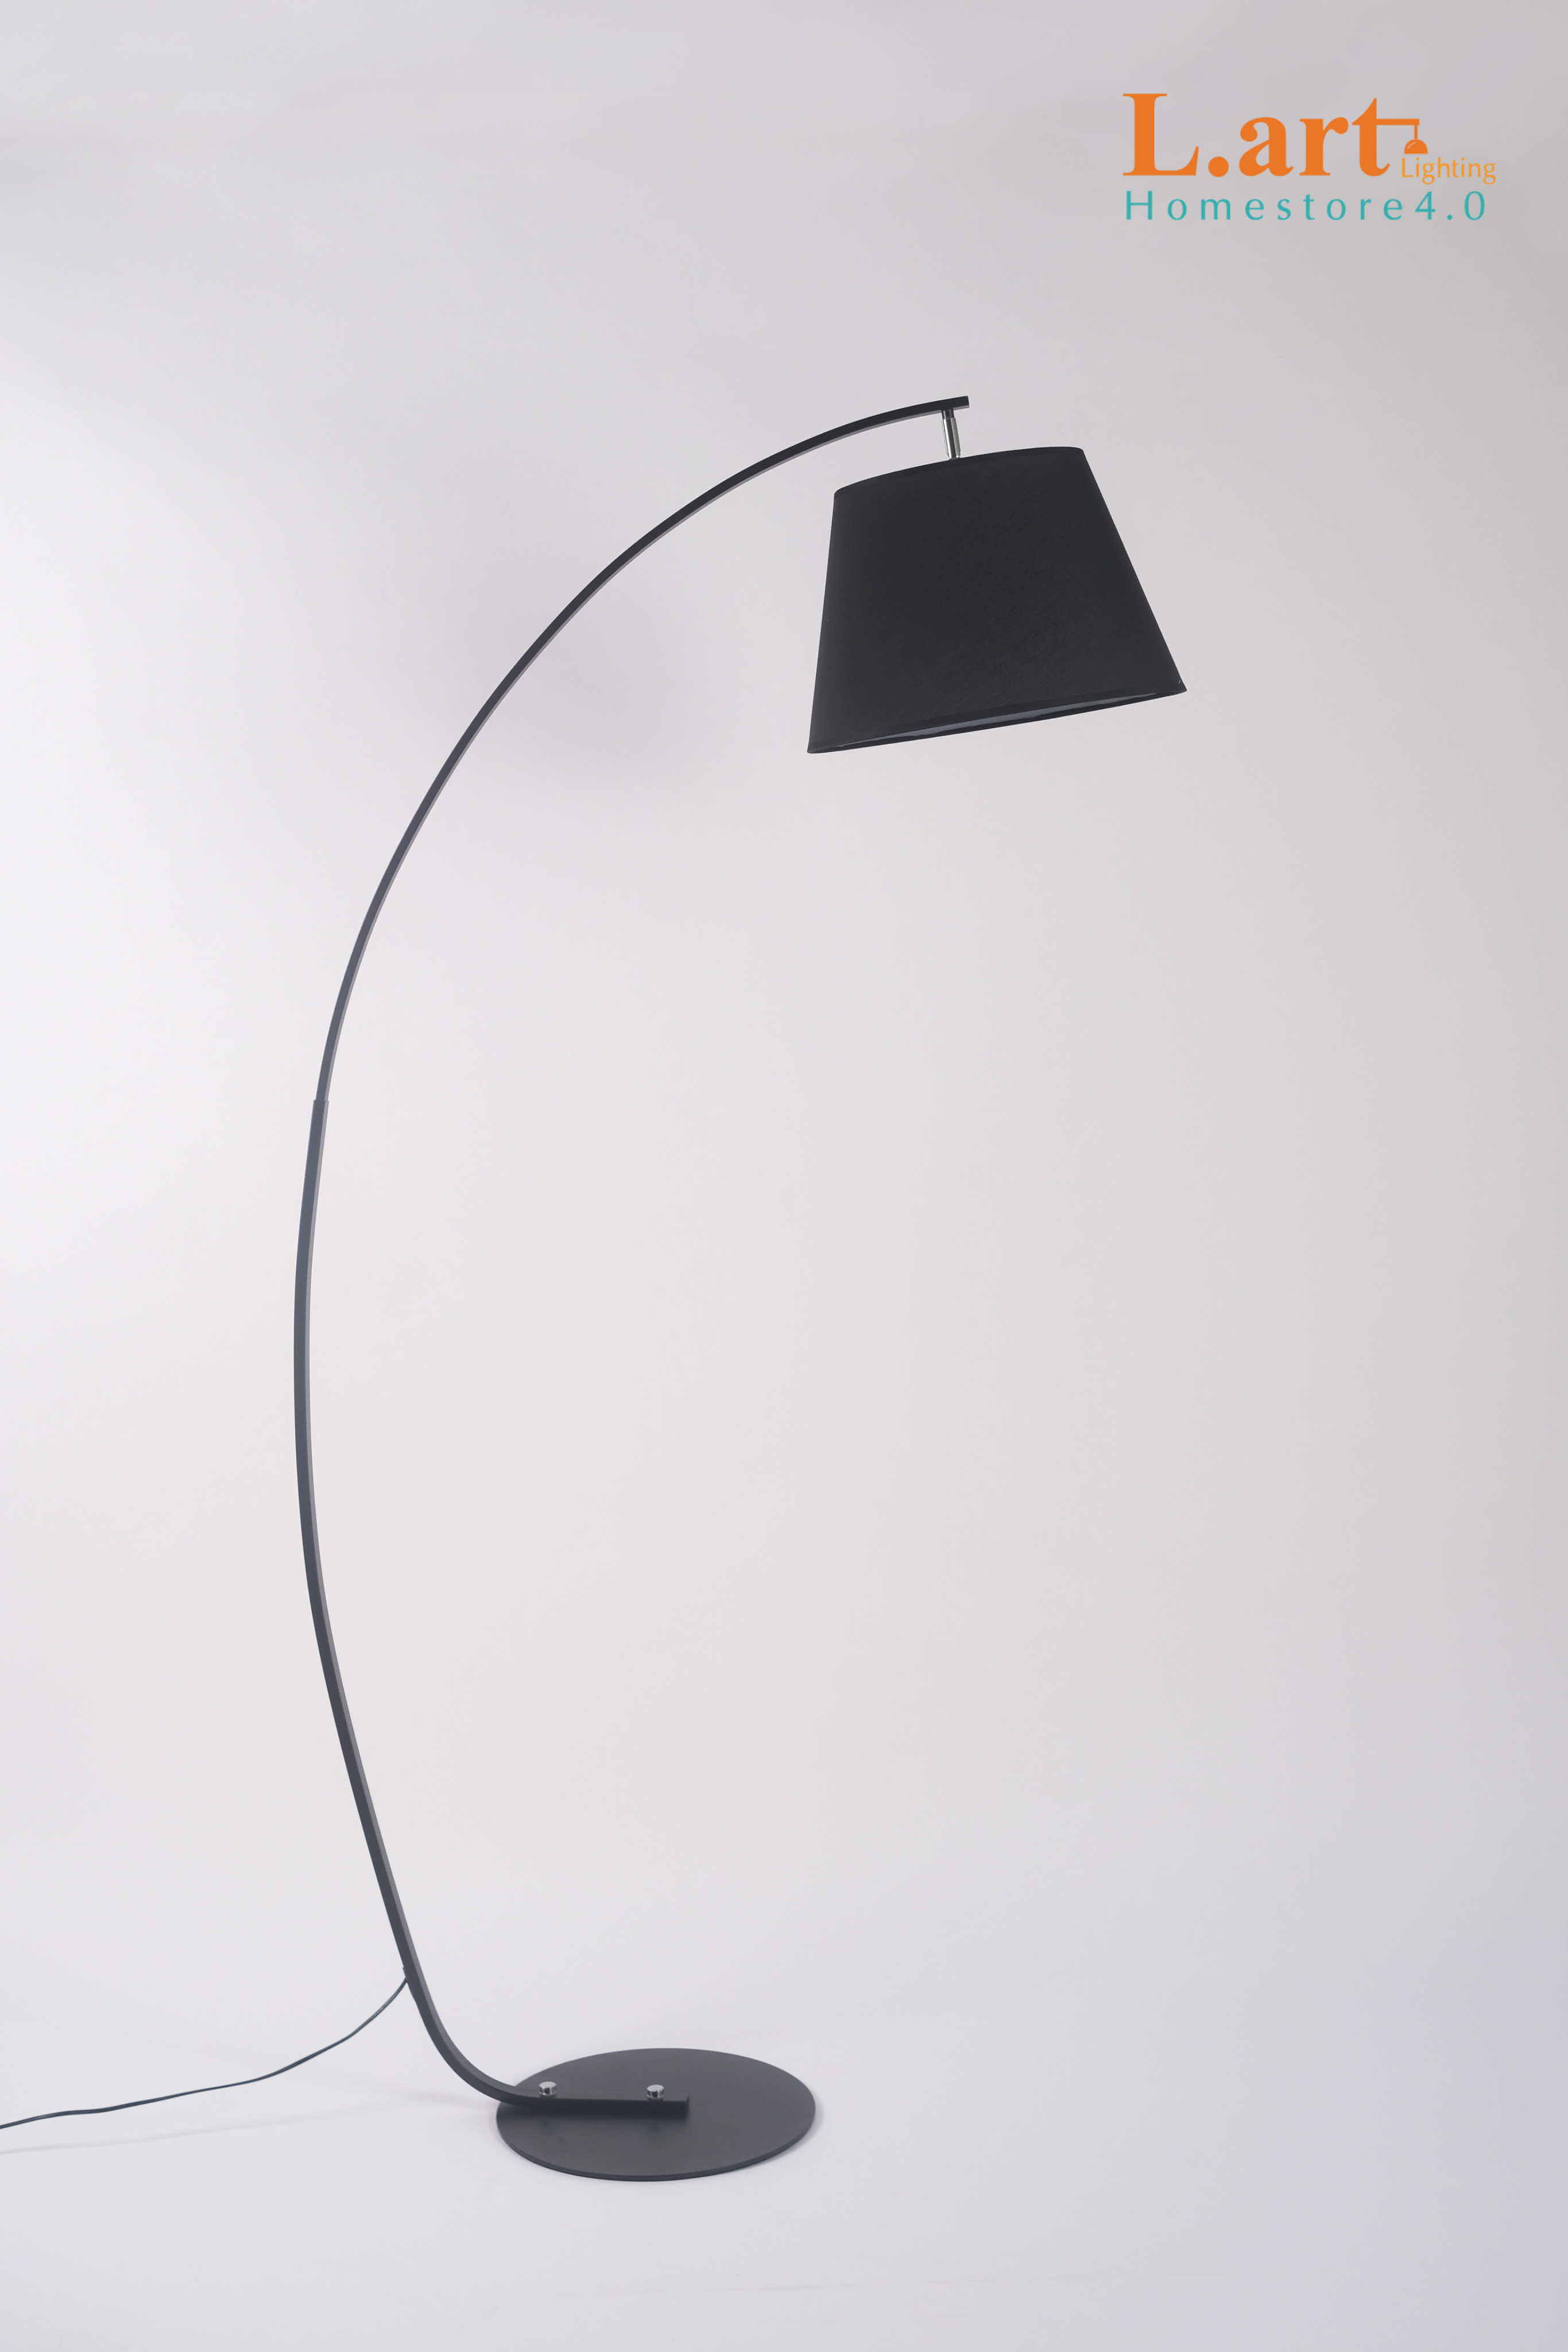 Đèn cây đứng phòng khách đèn làm việc dáng cong phong cách Minimalism DCLA006